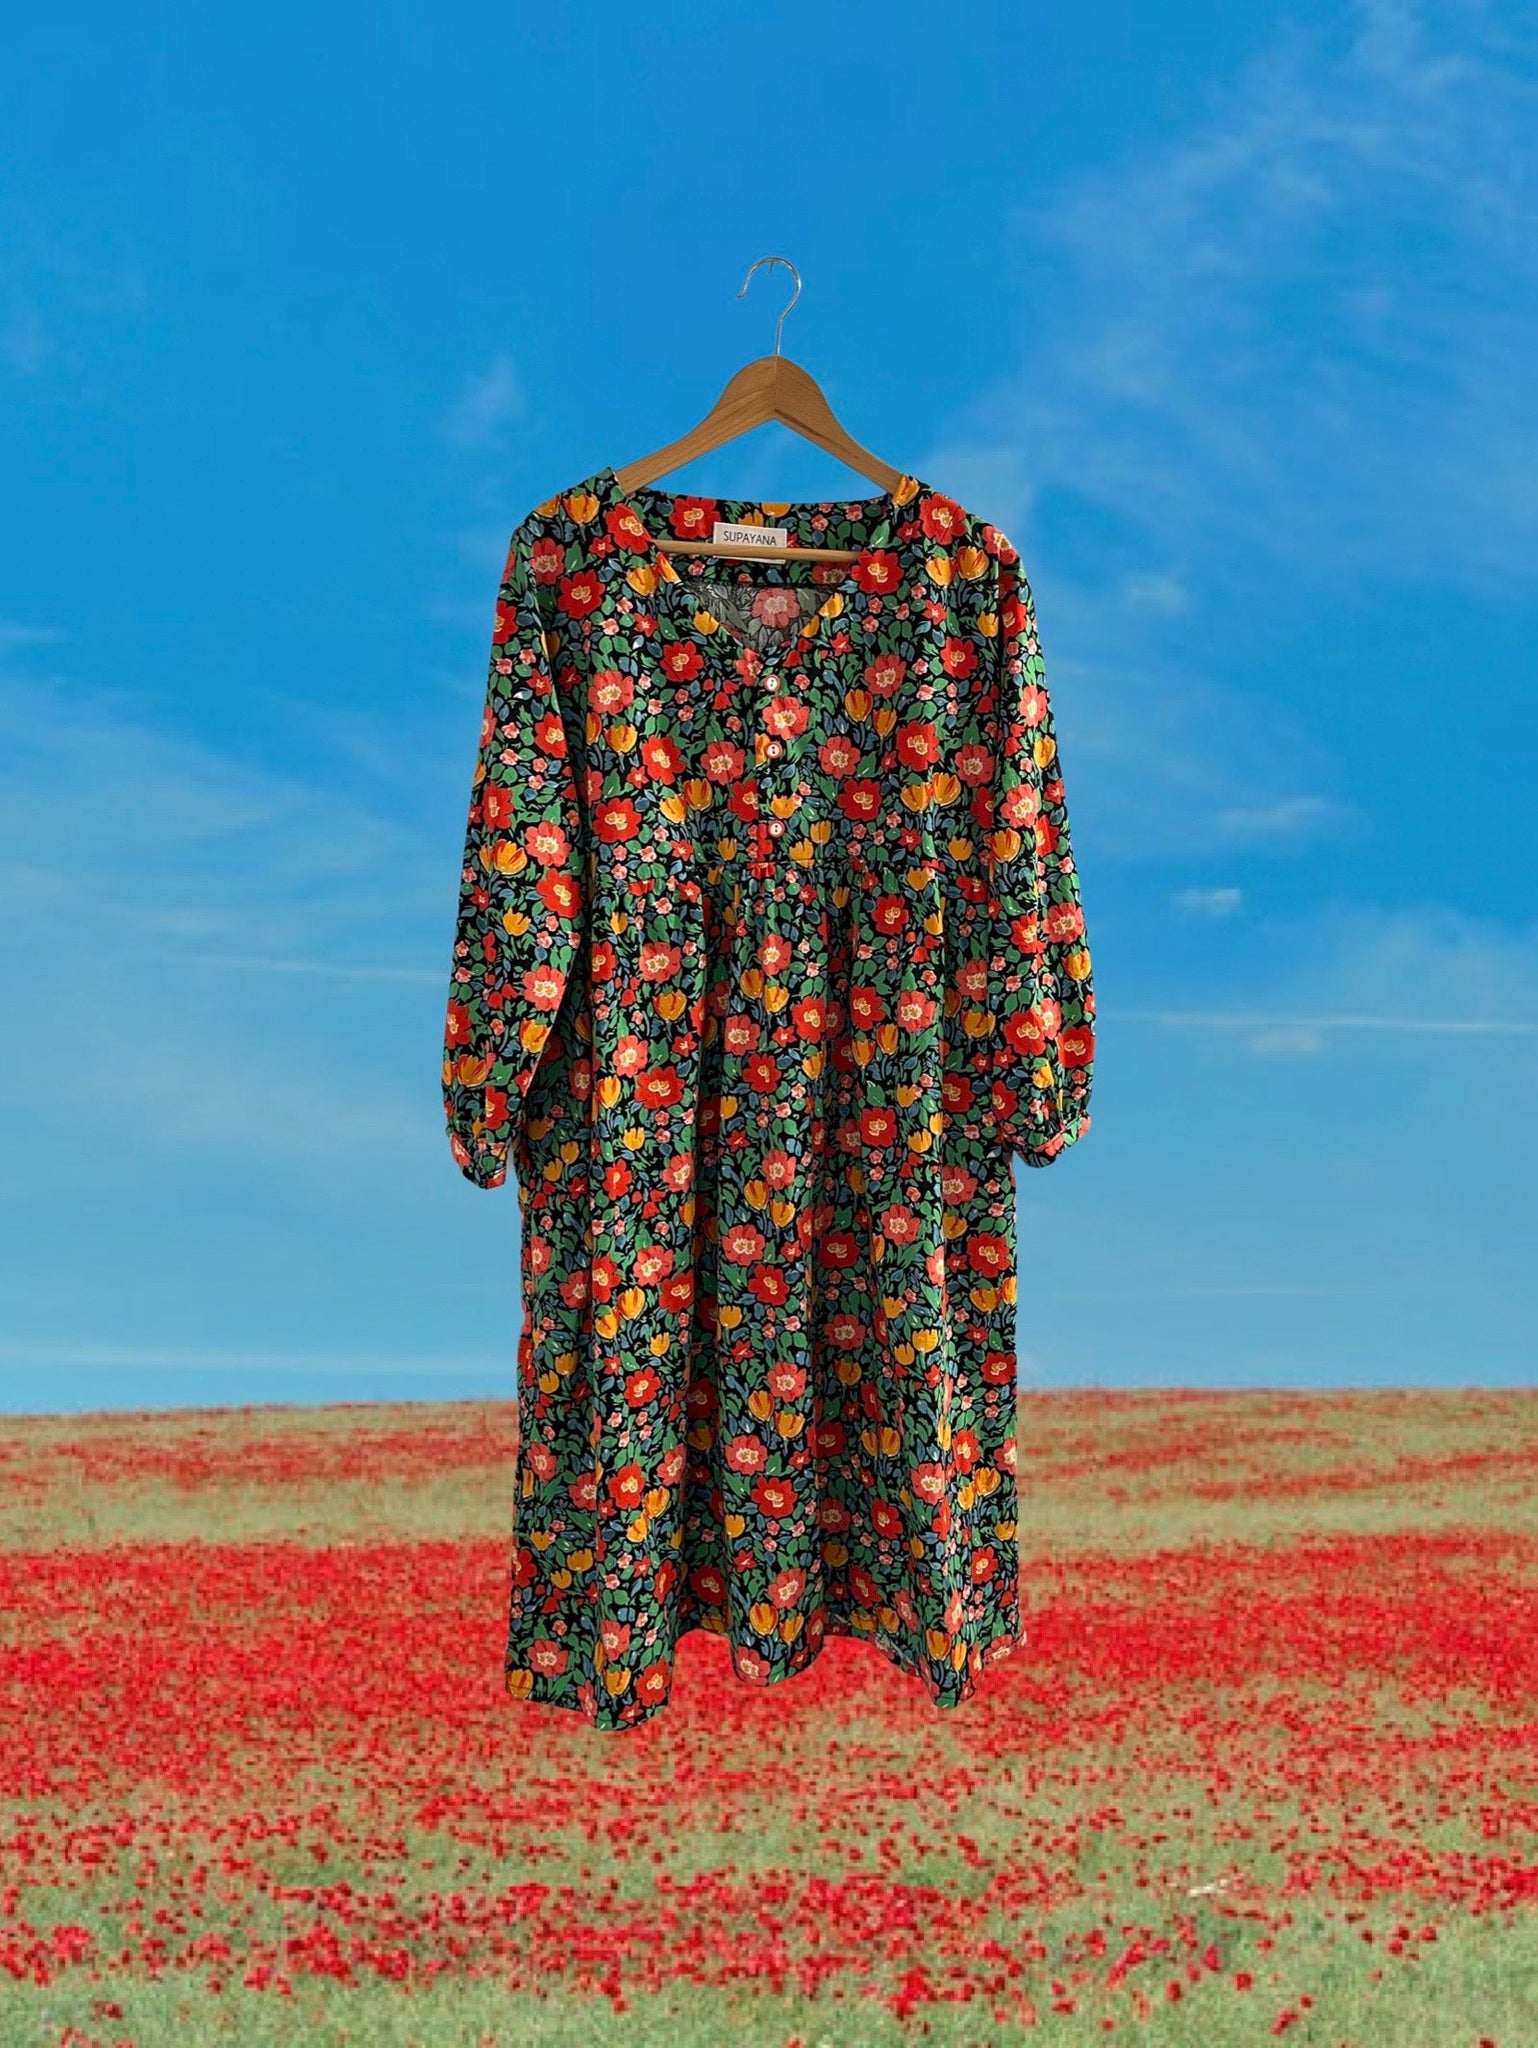 L/XL Wildflower dress